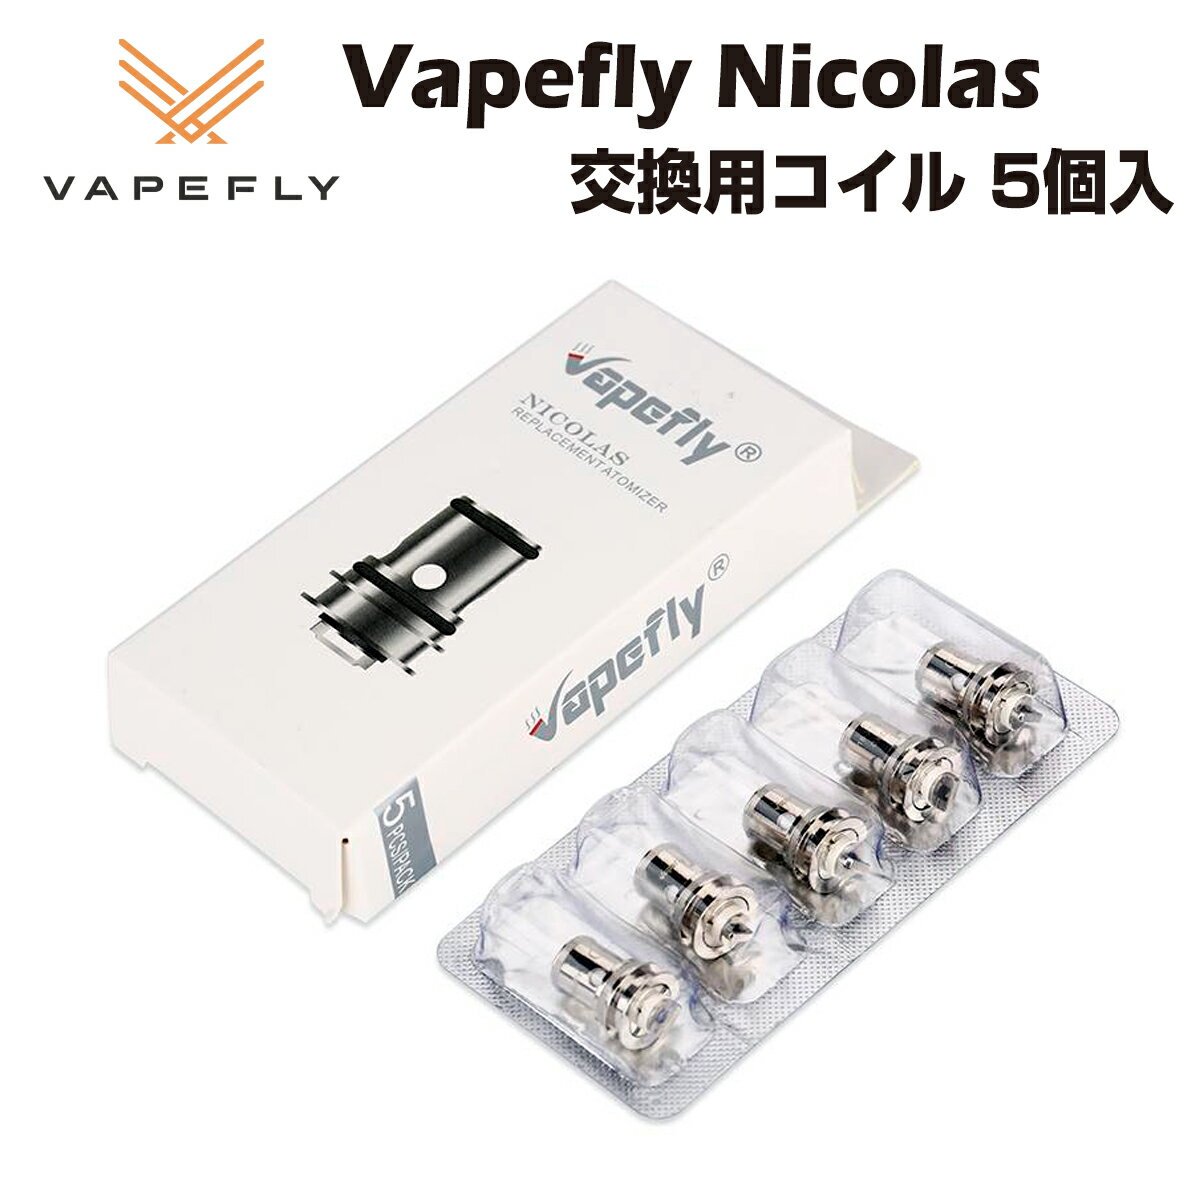 【送料無料】 Vapefly Nicolas 対応 交換用コイル 5個入 0.6Ω/1.8Ω ベイプ ...